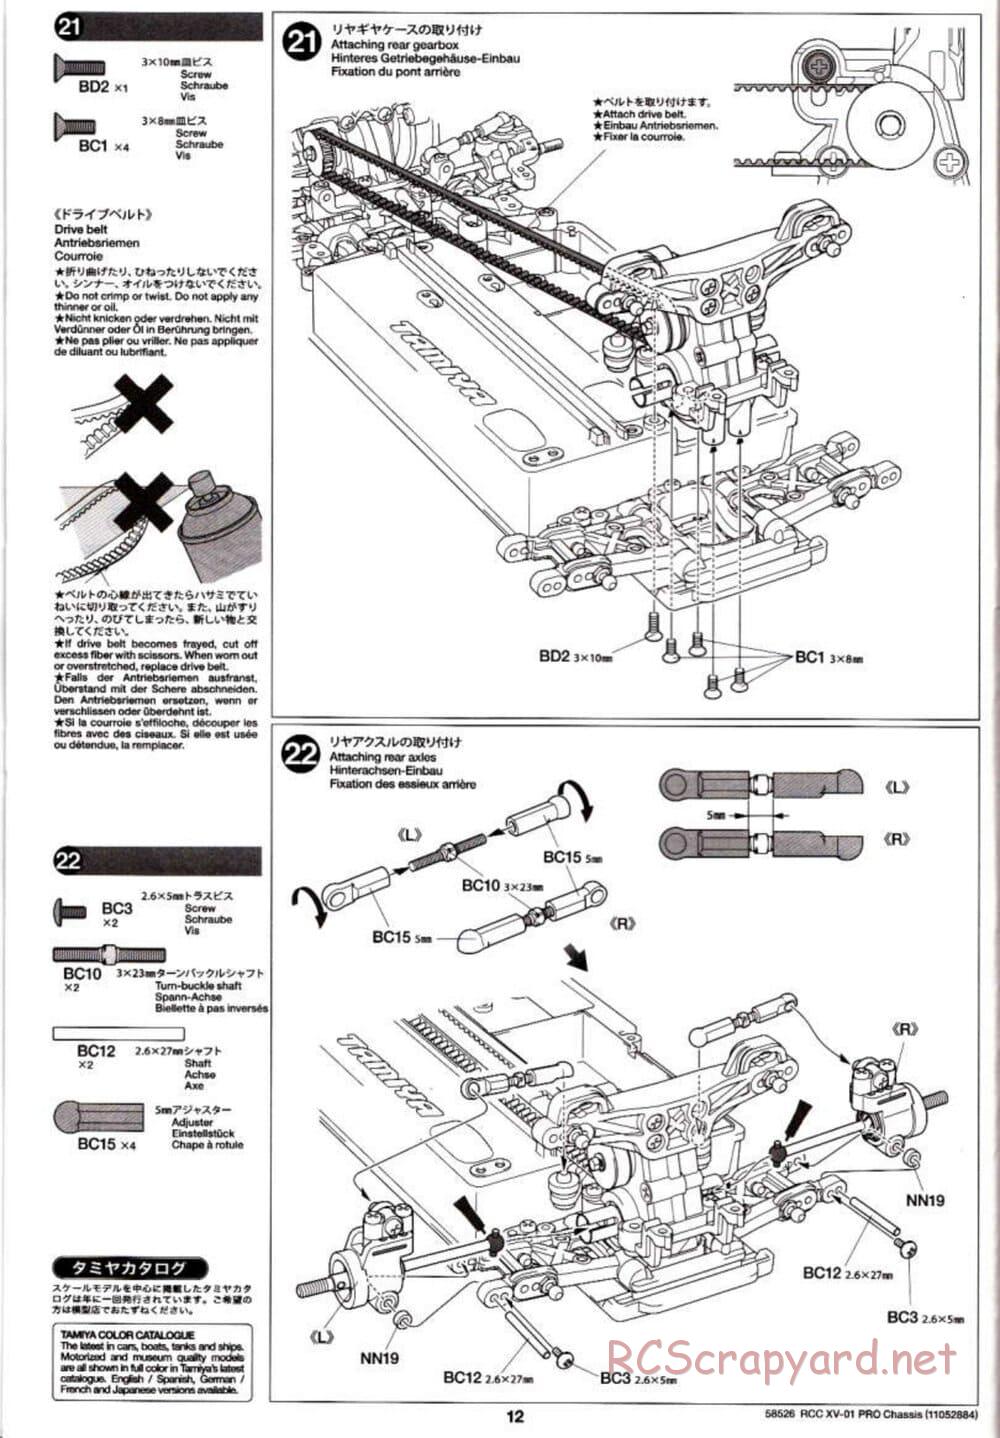 Tamiya - XV-01 PRO Chassis - Manual - Page 12